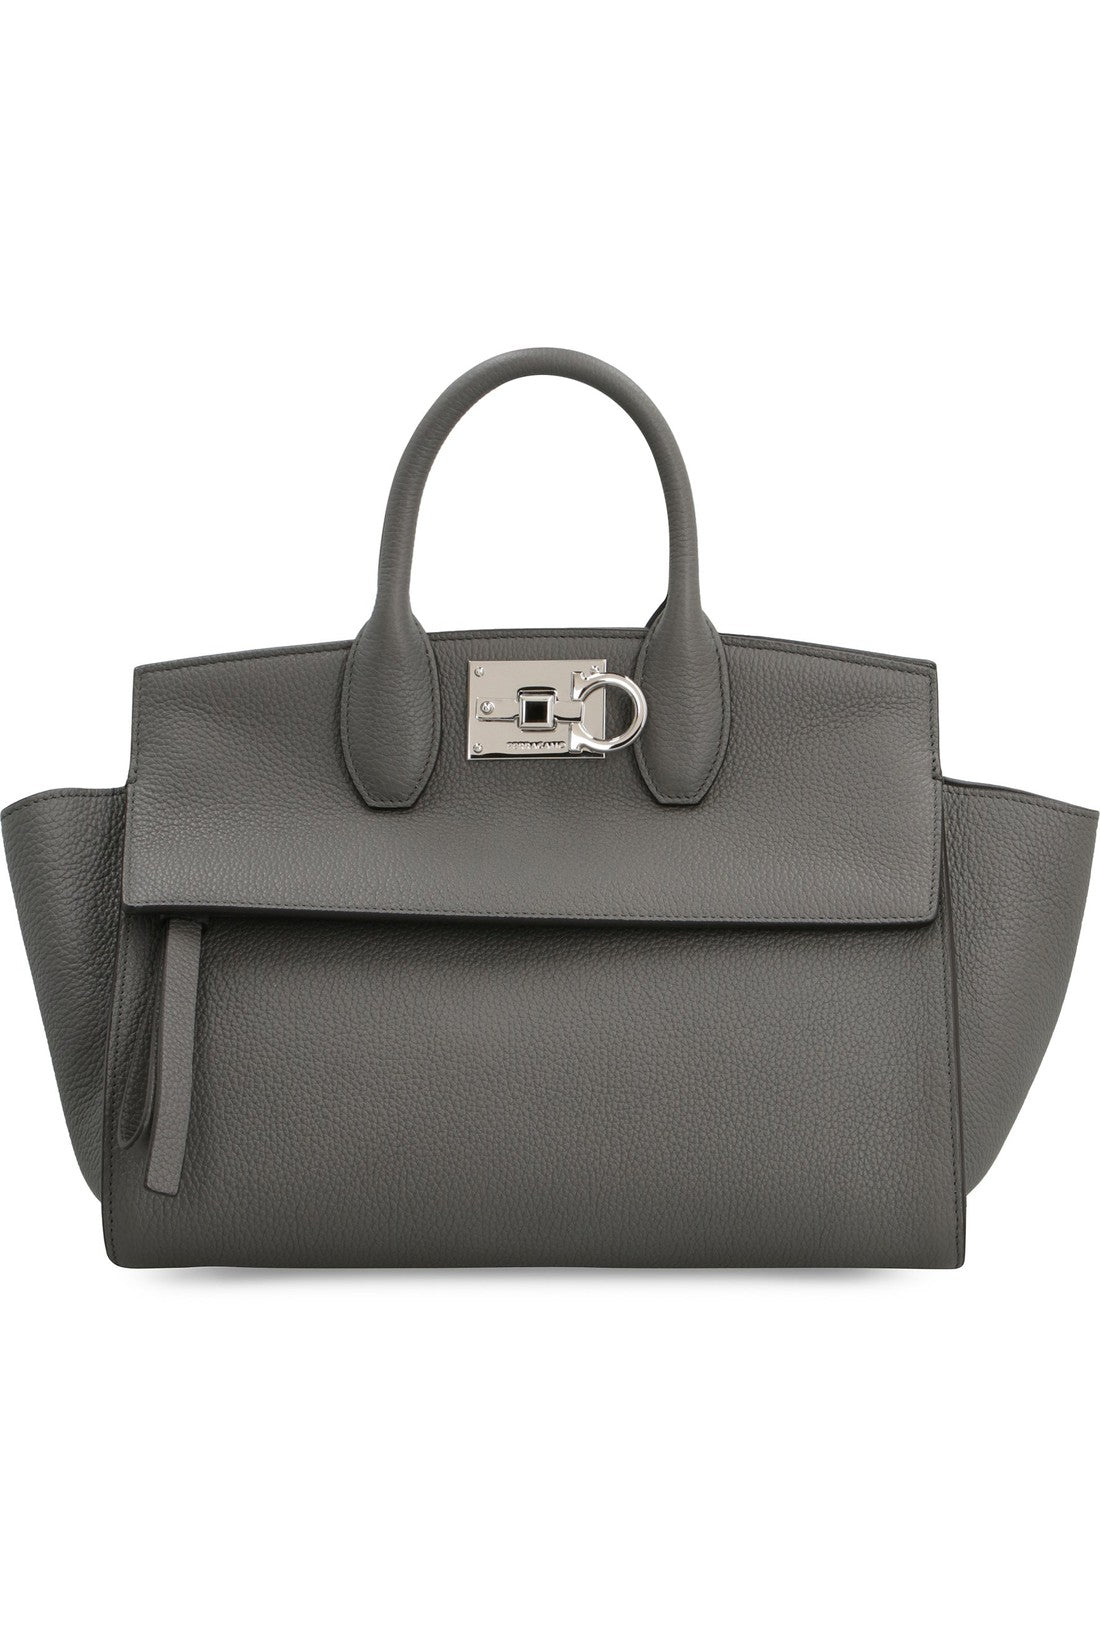 FERRAGAMO-OUTLET-SALE-Studio Soft leather handbag-ARCHIVIST